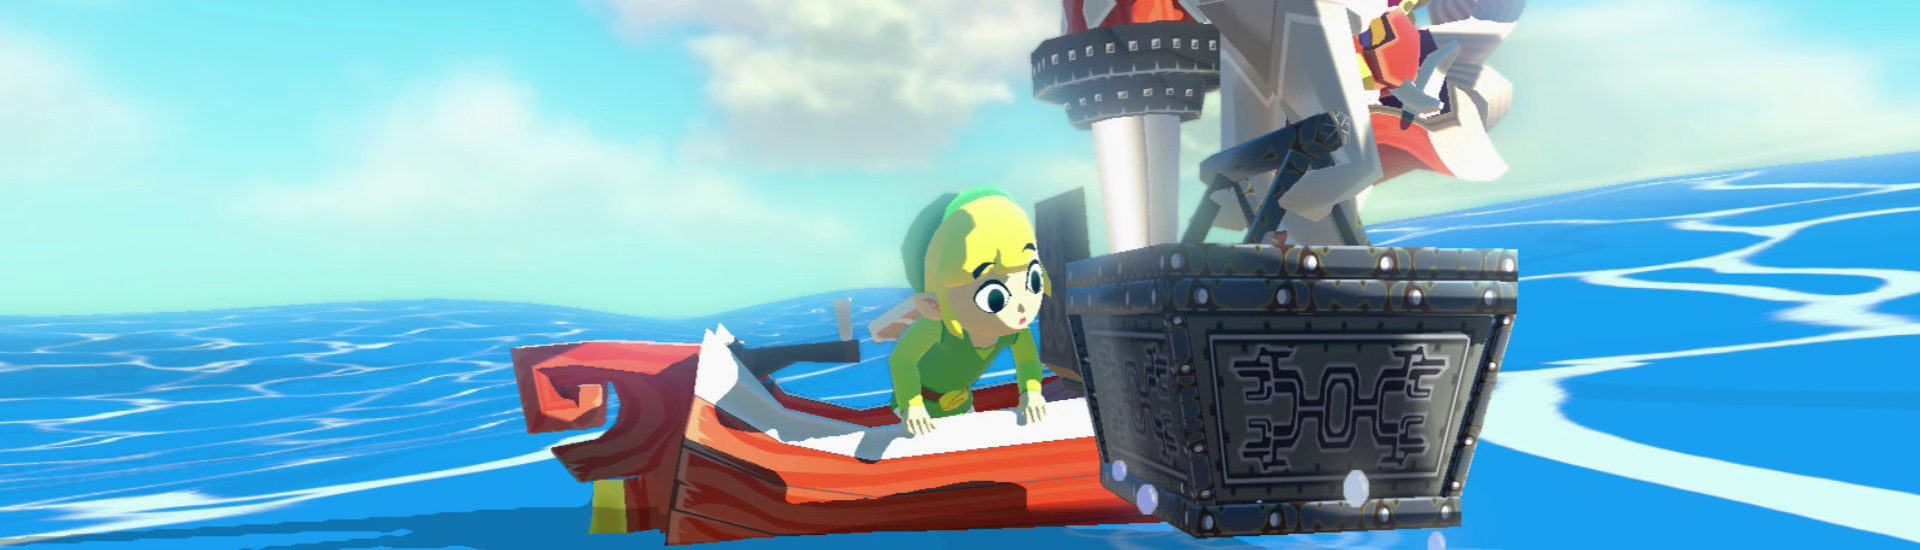 Zelda Collection: Insider heizt Gerüchte wieder an